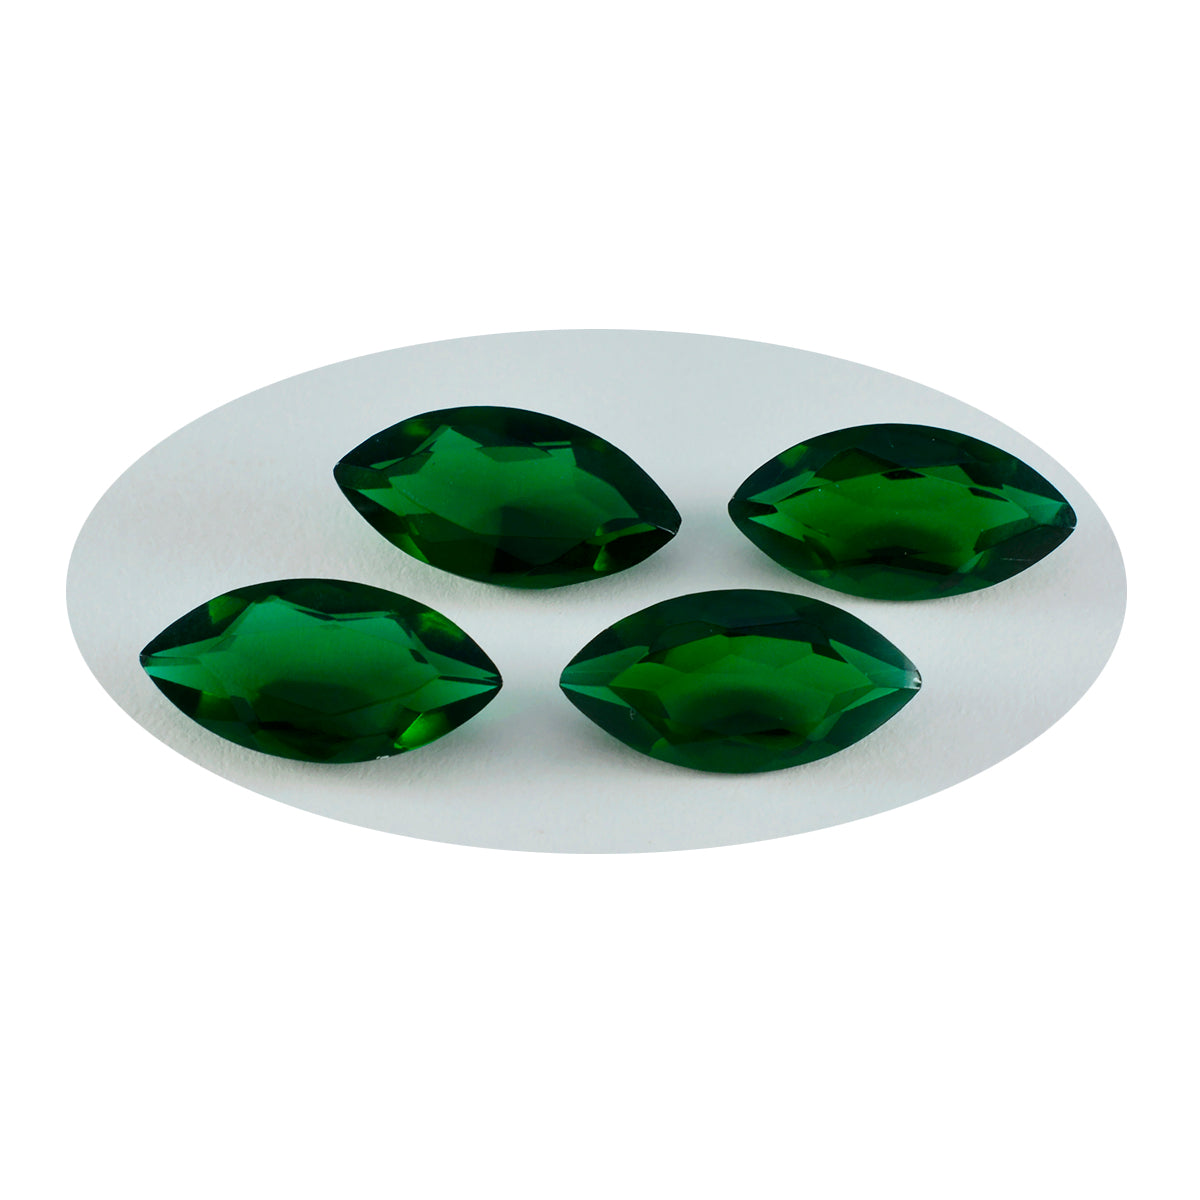 riyogems 1 шт. зеленый изумруд граненый cz 10x20 мм драгоценный камень хорошего качества в форме маркизы